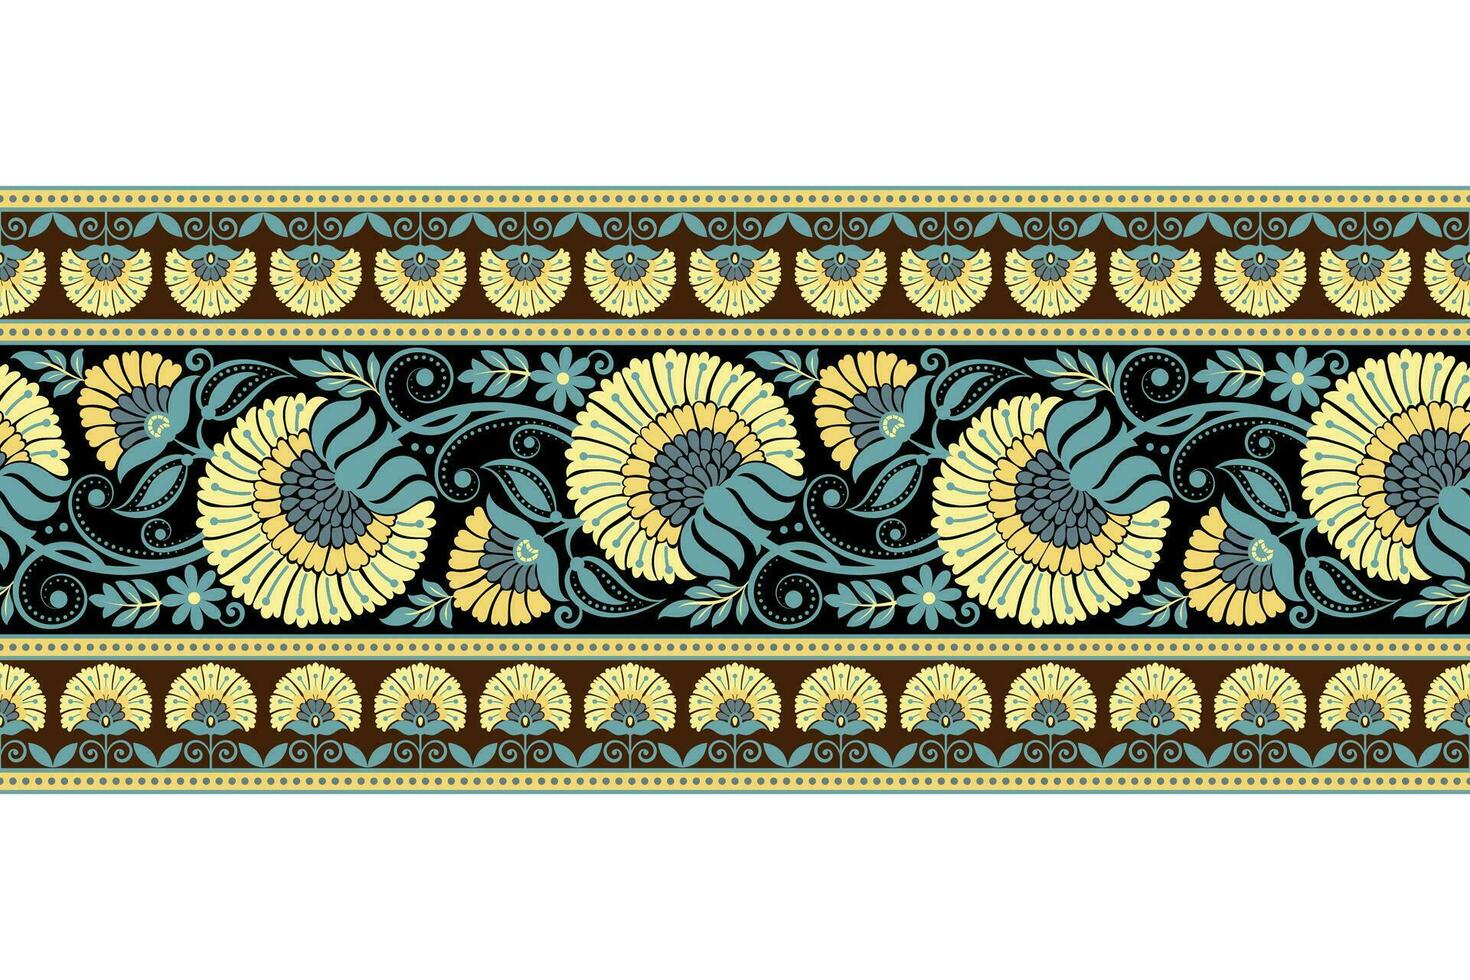 Blumen- nahtlos Hintergrund geometrisch ethnisch orientalisch Ikat nahtlos Muster traditionell Design zum hintergrund,teppich,tapete,kleidung,verpackung,batik,stoff,vektor Illustration Stickerei Stil. vektor